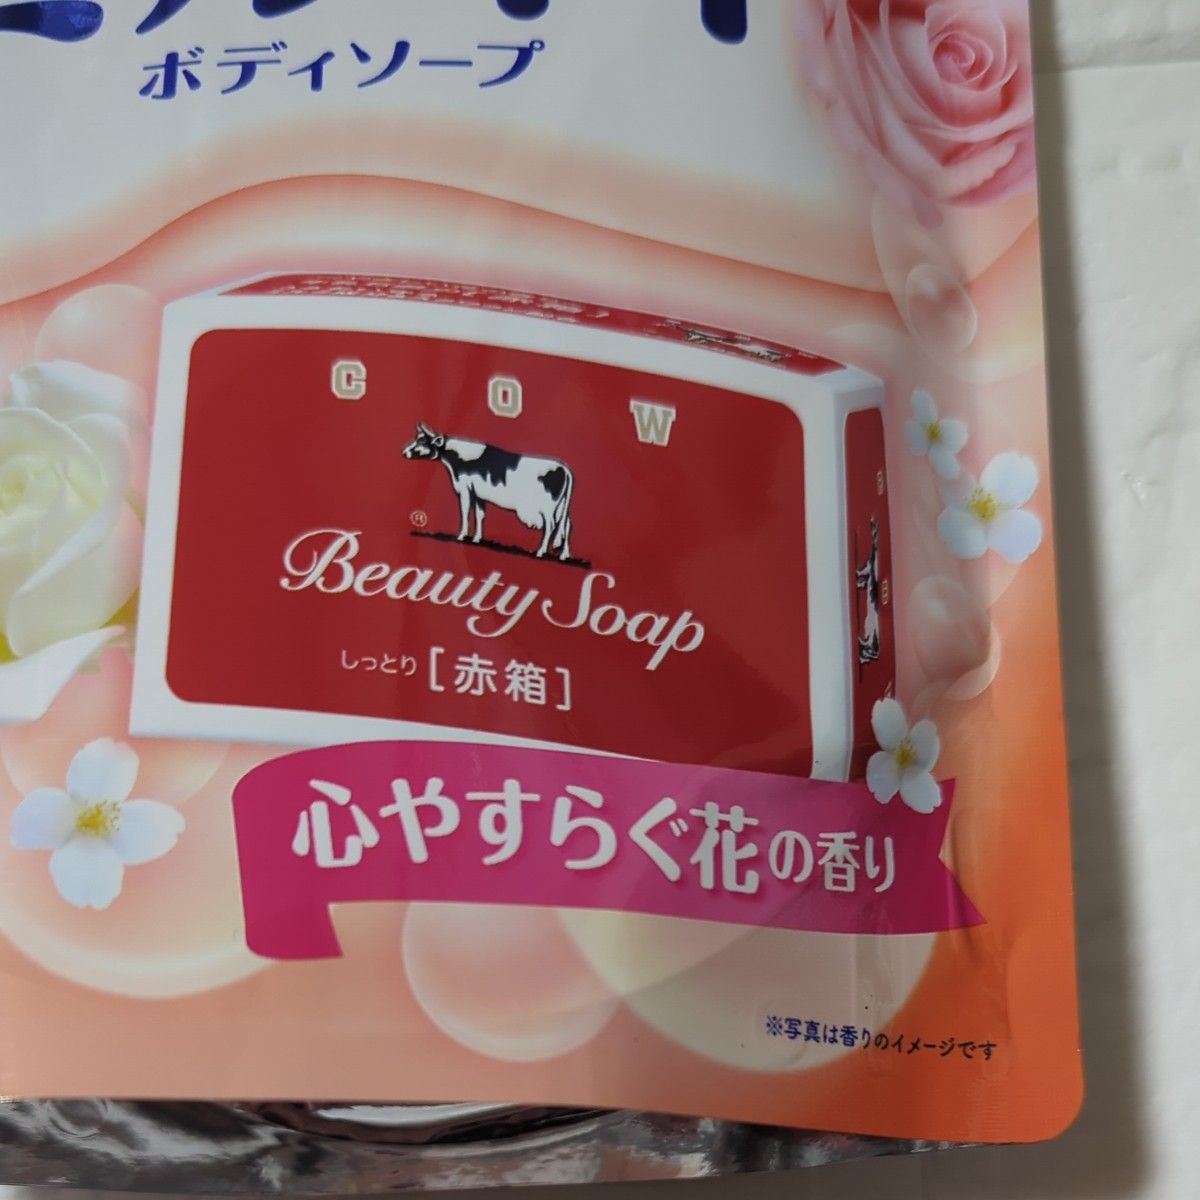 【新品】限定品  牛乳石鹸  ミルキィ ボディソープ   赤箱の香り  2袋  カウブランド  心やすらぐ花の香り  シアバター